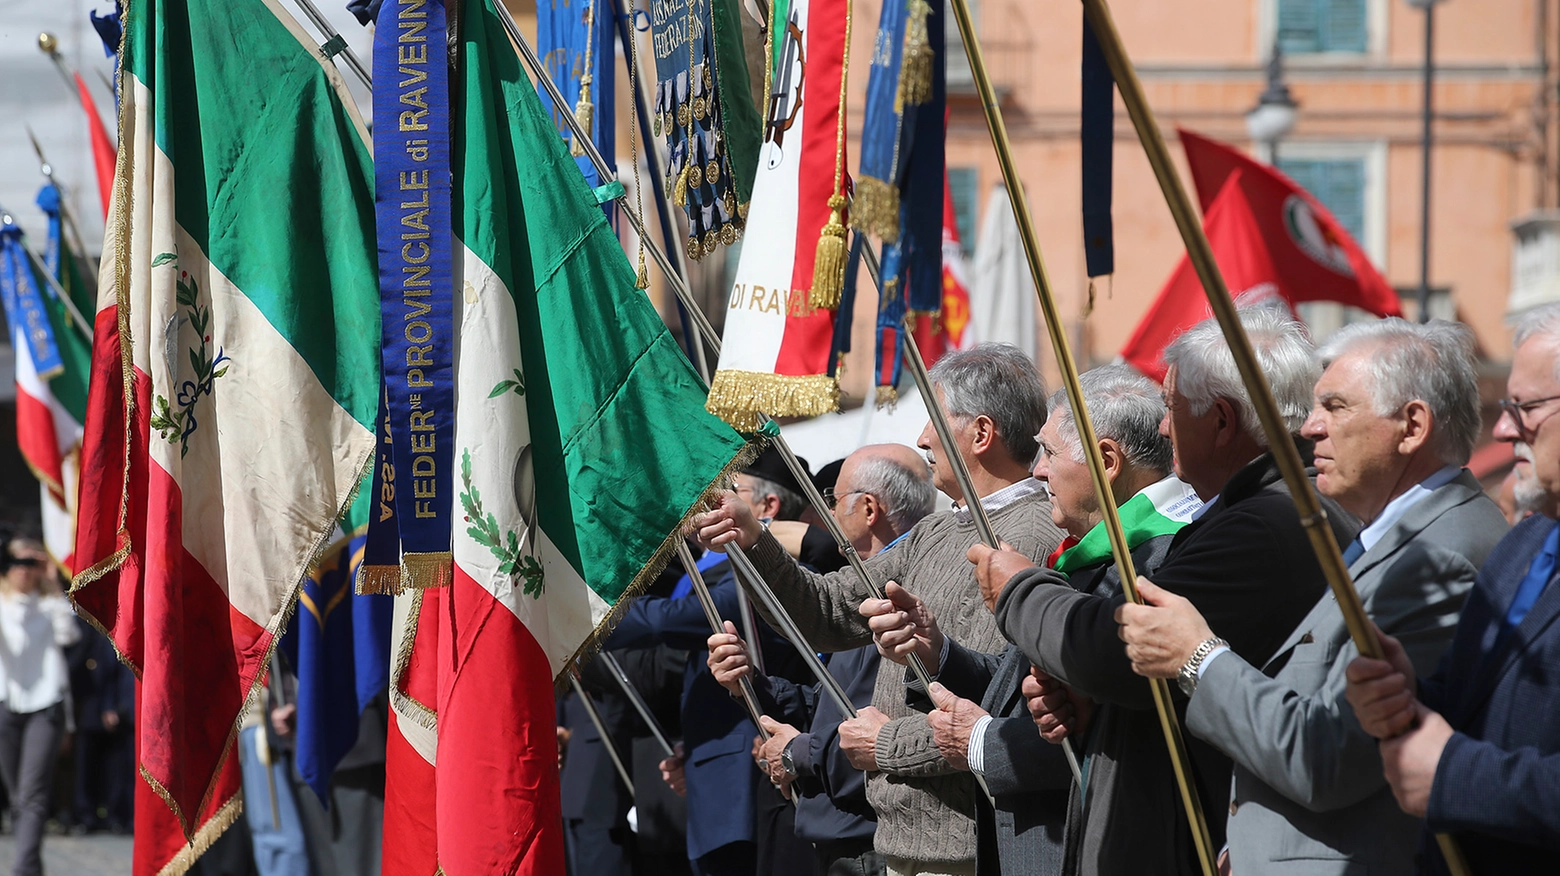 Una festa della liberazione a Ravenna (Zani)